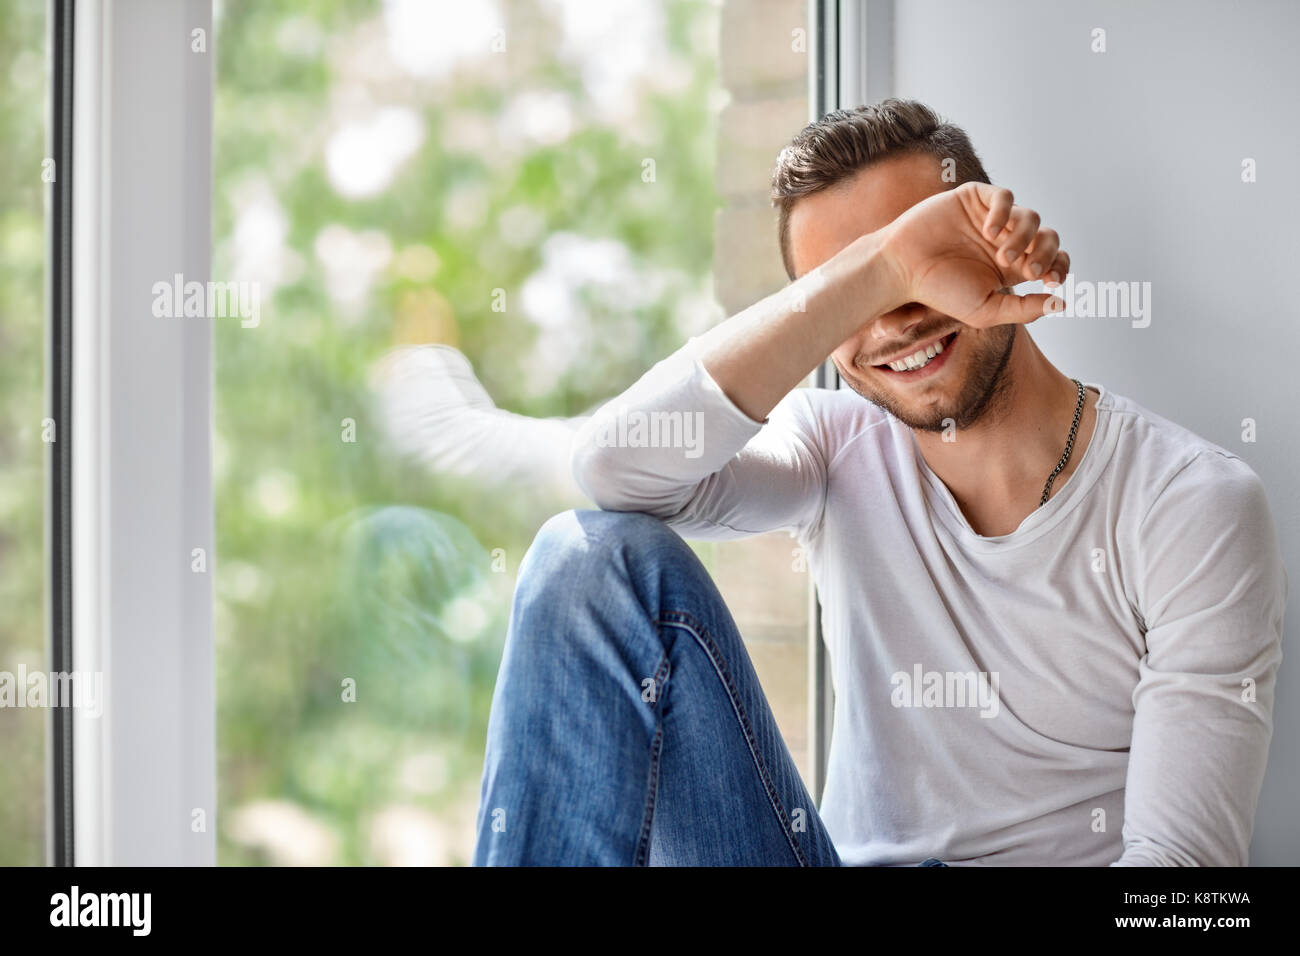 Lächelnd schüchternen Mann Gesicht mit der Hand sitzen auf Fensterbank Stockfoto